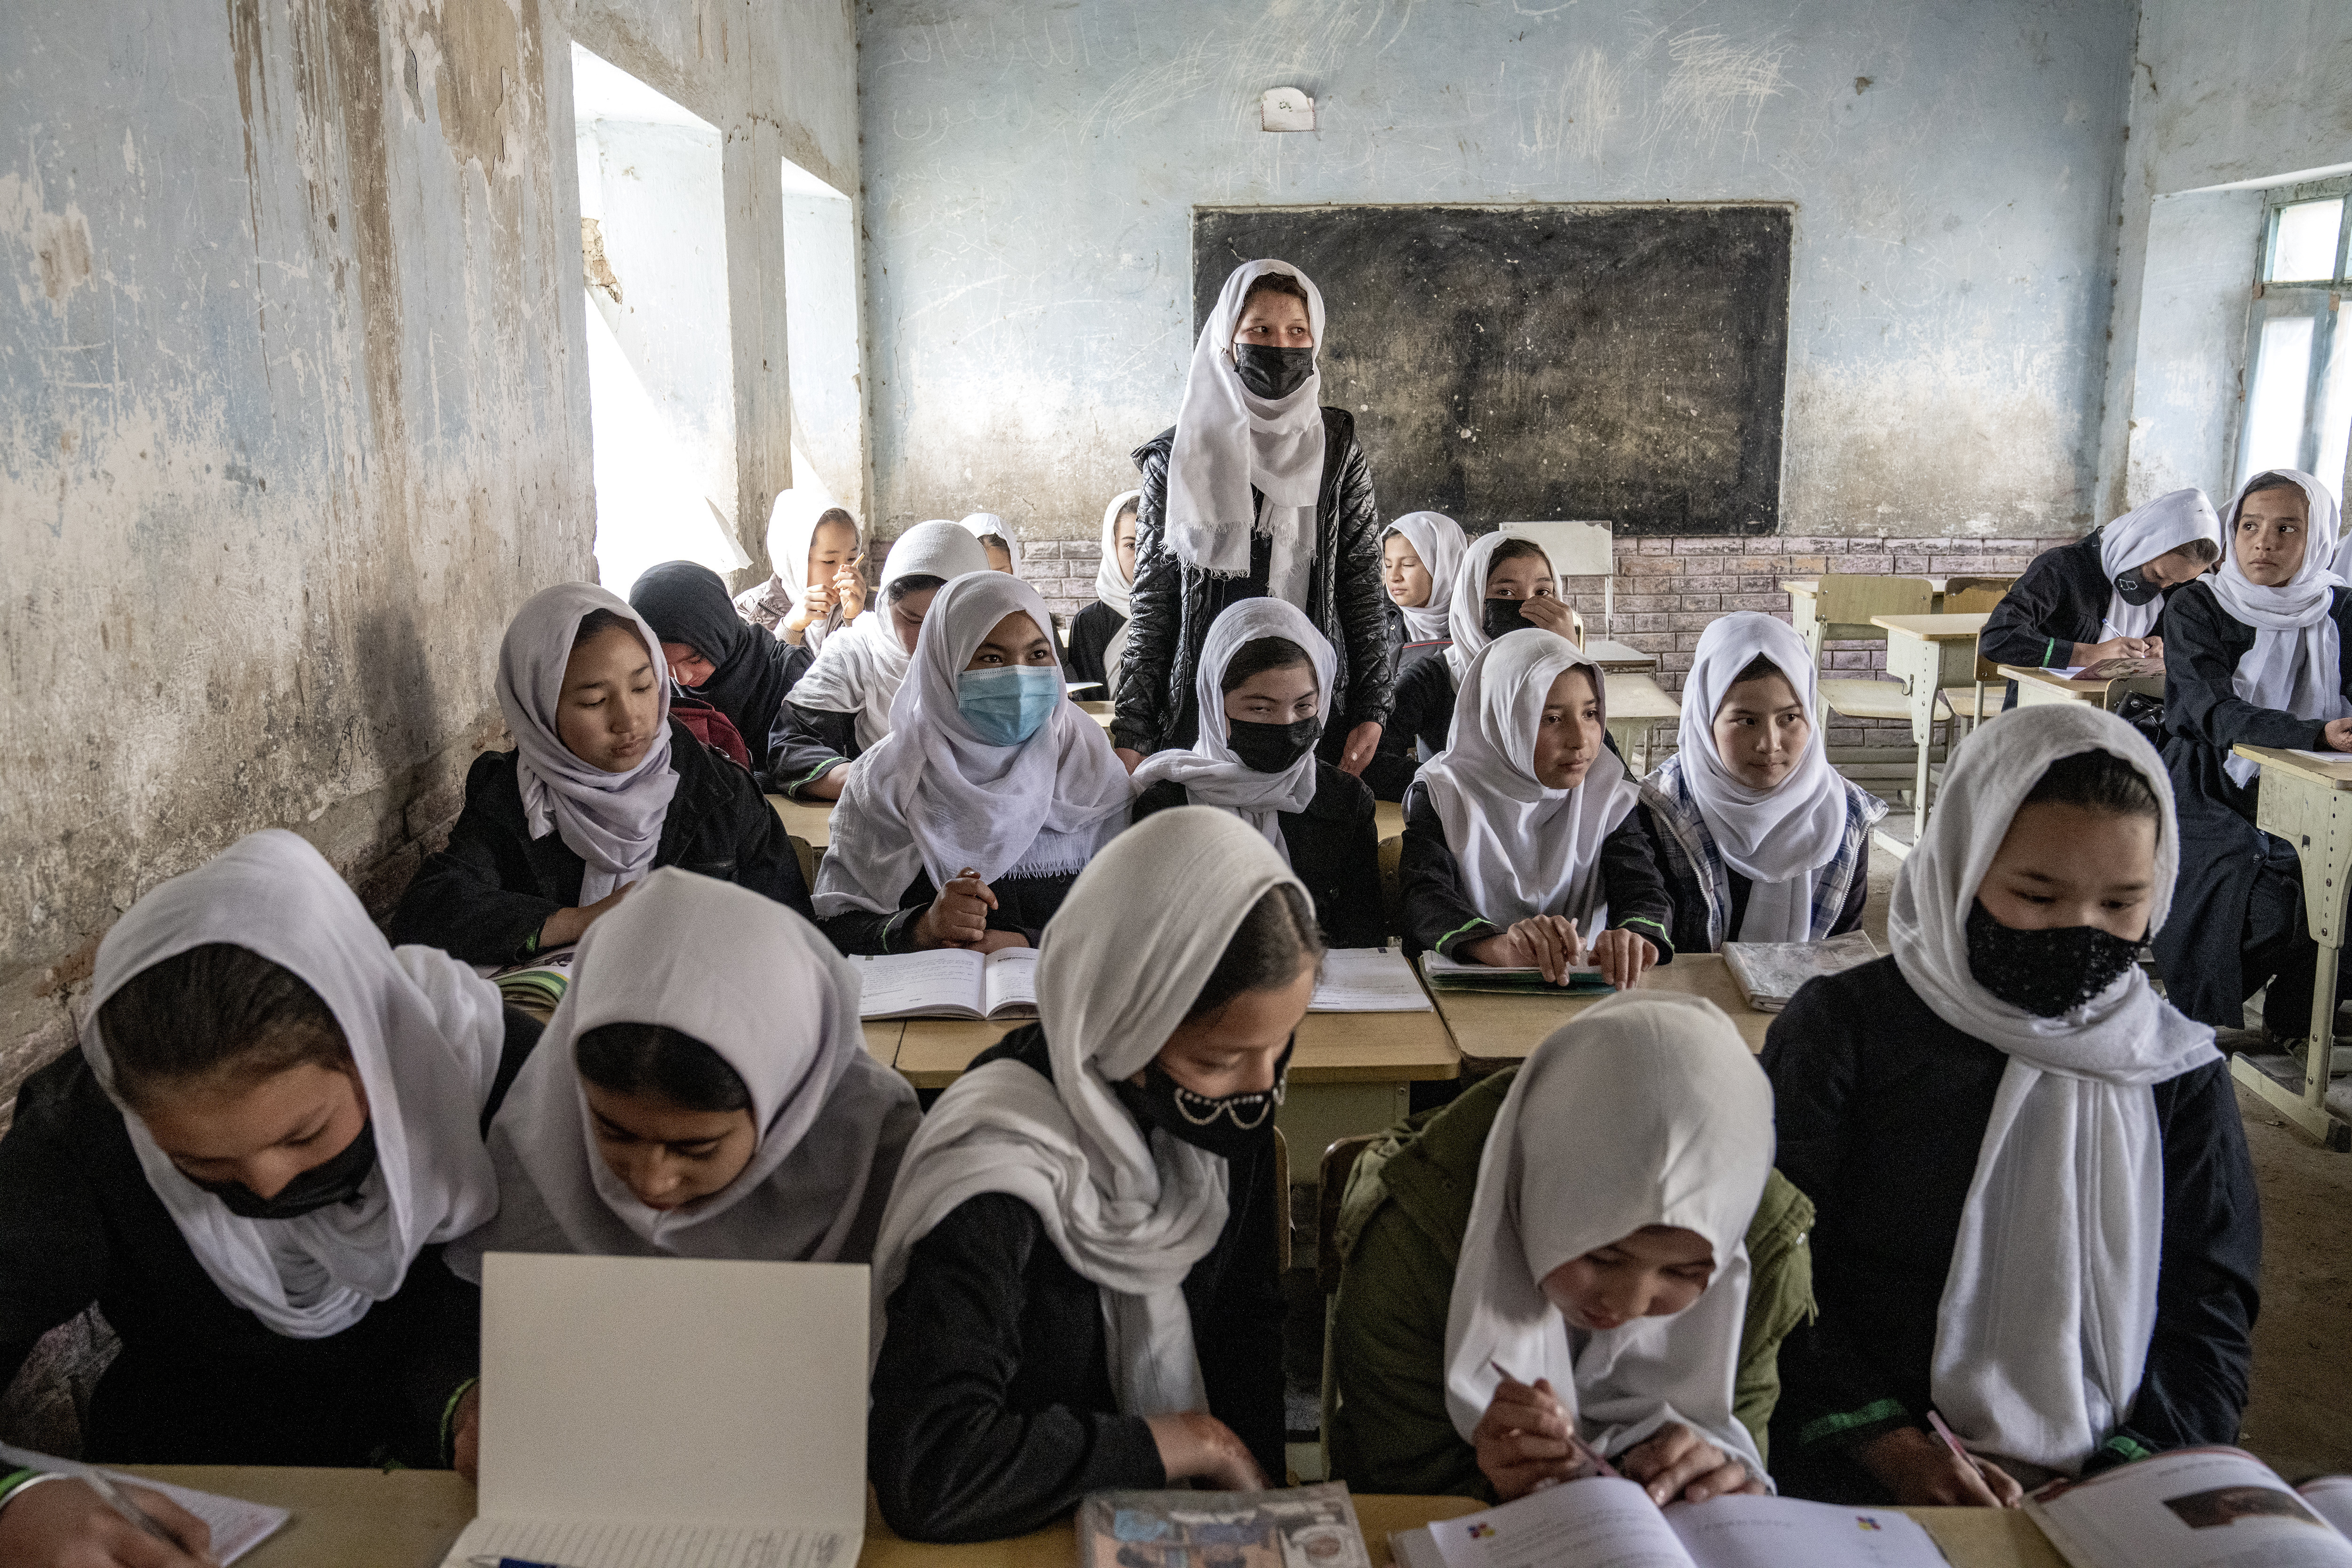 Los talibanes han eliminado la educación secundaria y superior para las mujeres y las niñas, lo que les niega el acceso a la universidad y limita sus opciones profesionales. (AP)